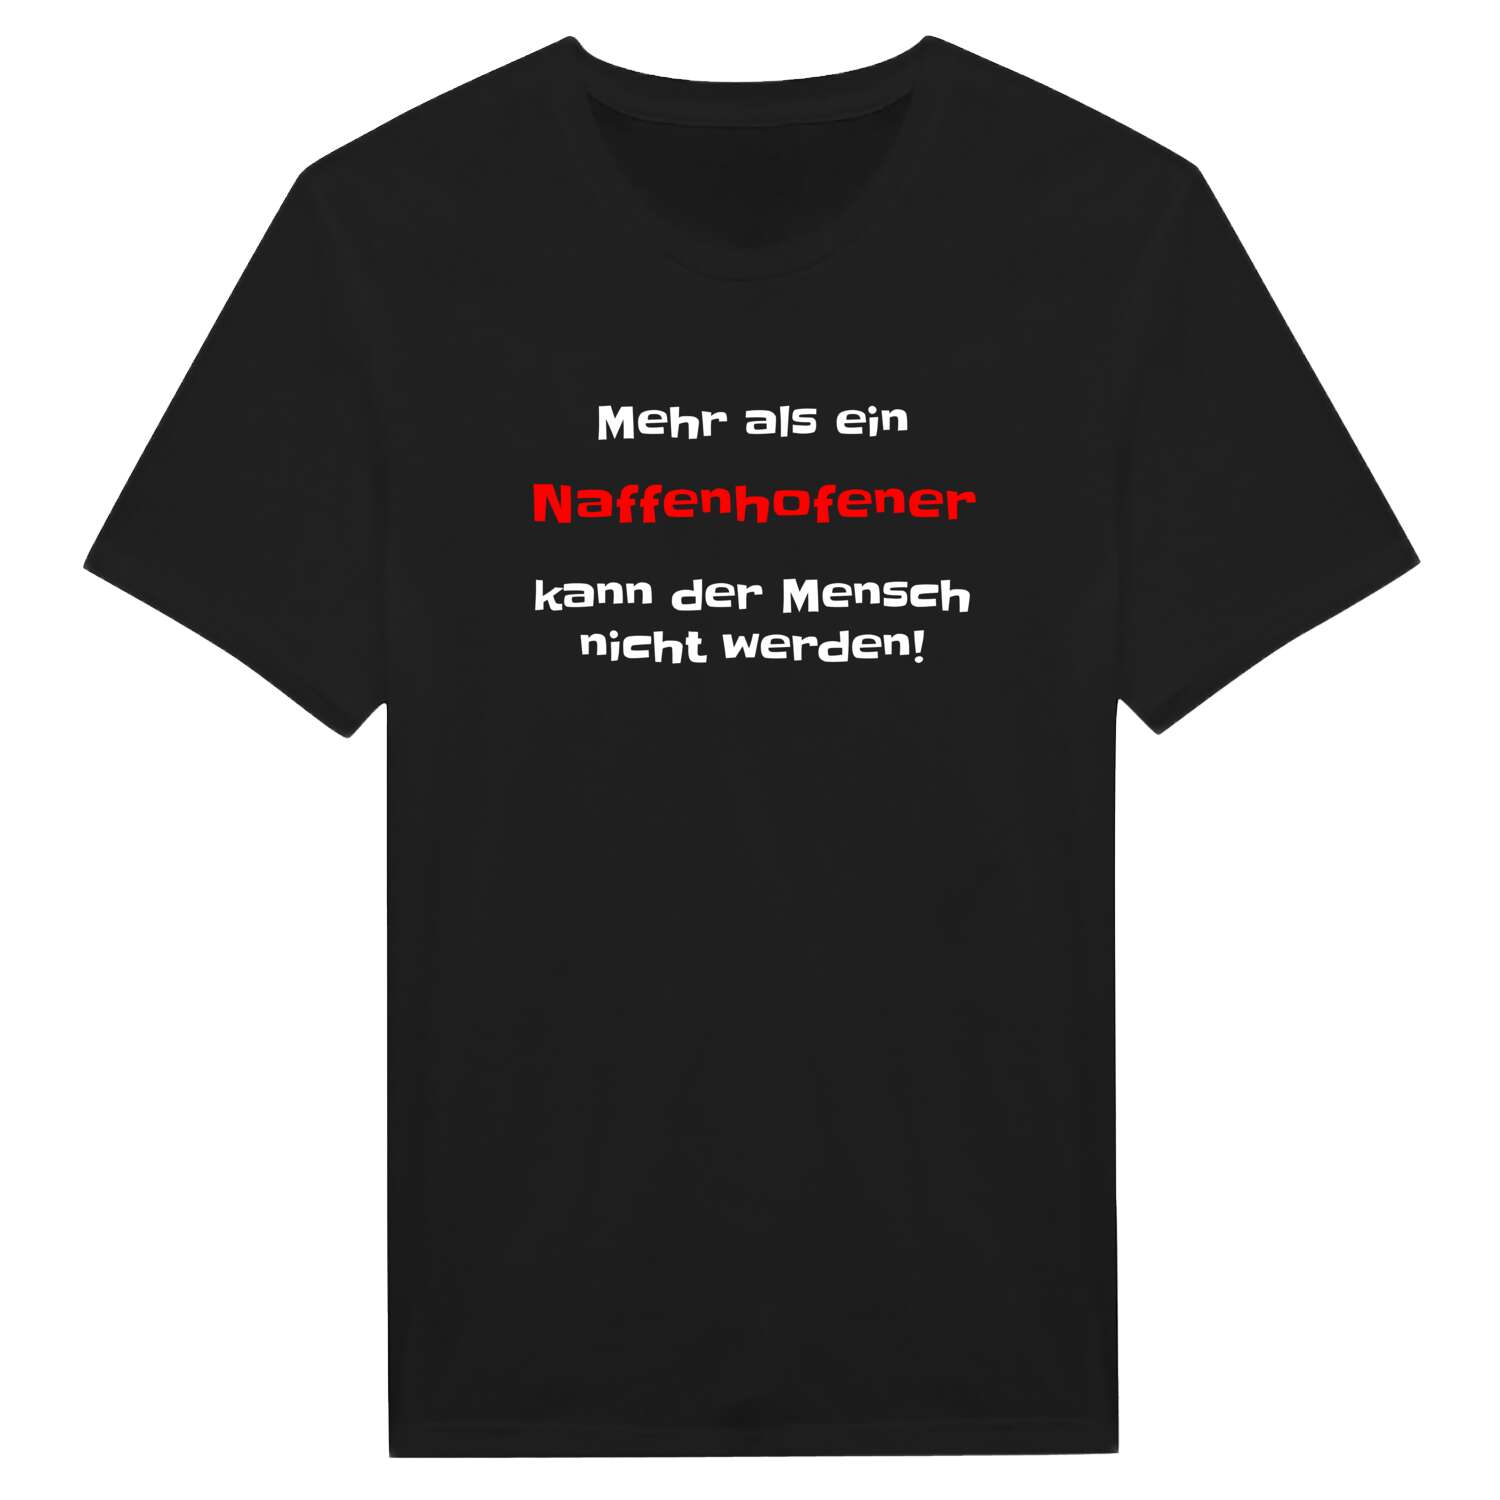 Naffenhofen T-Shirt »Mehr als ein«